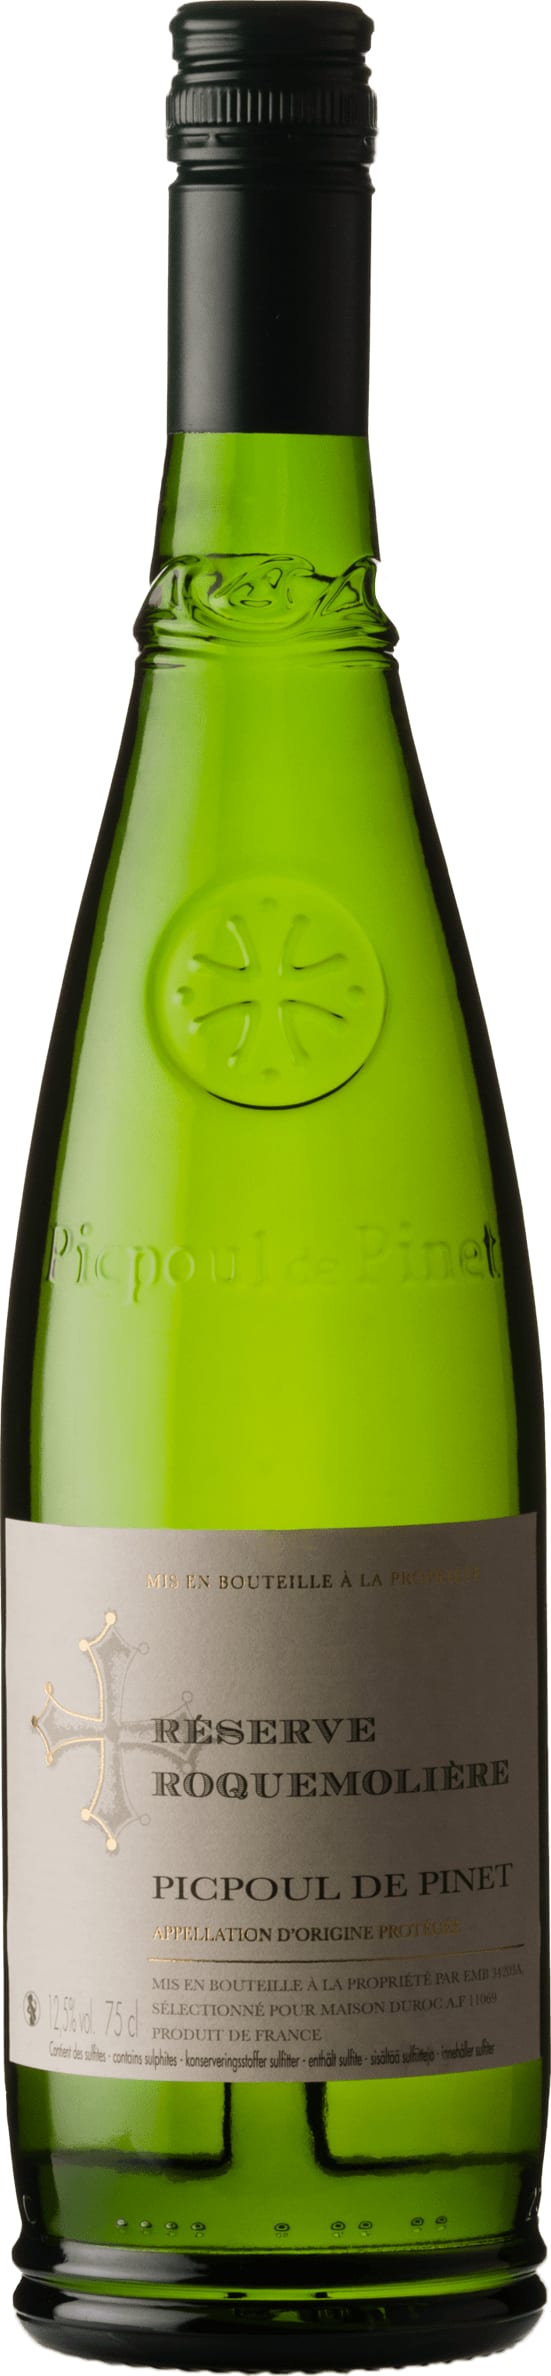 Reserve Roquemoliere Picpoul de Pinet 2023 75cl - Buy Reserve Roquemoliere Wines from GREAT WINES DIRECT wine shop